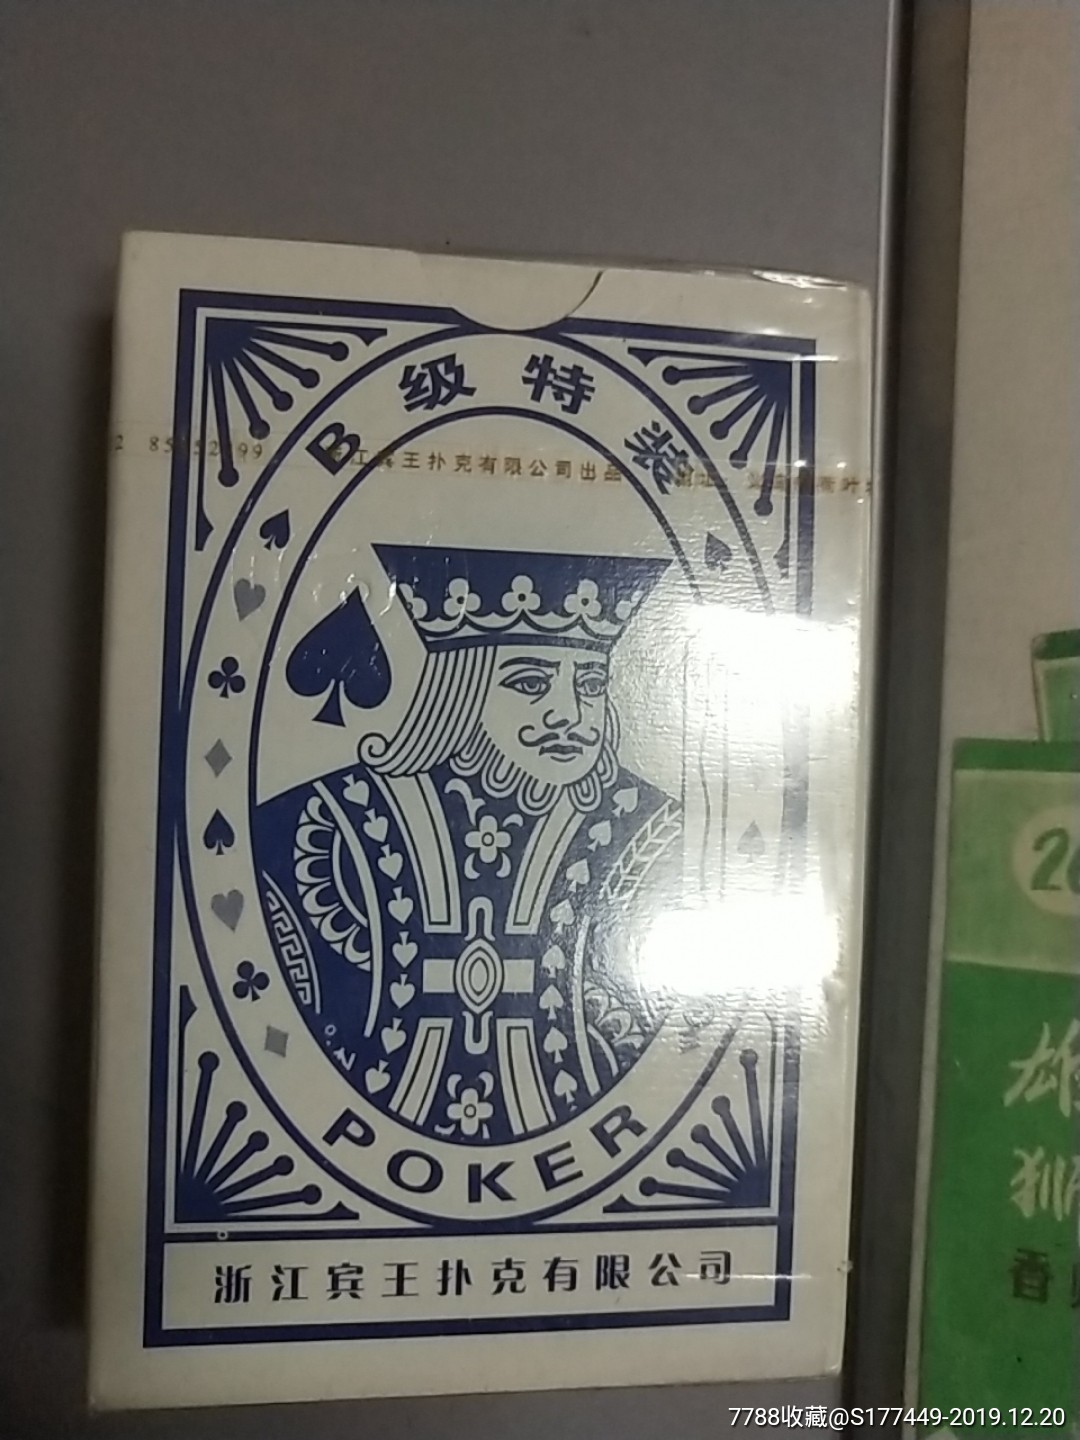 宾王扑克密码图说明图片